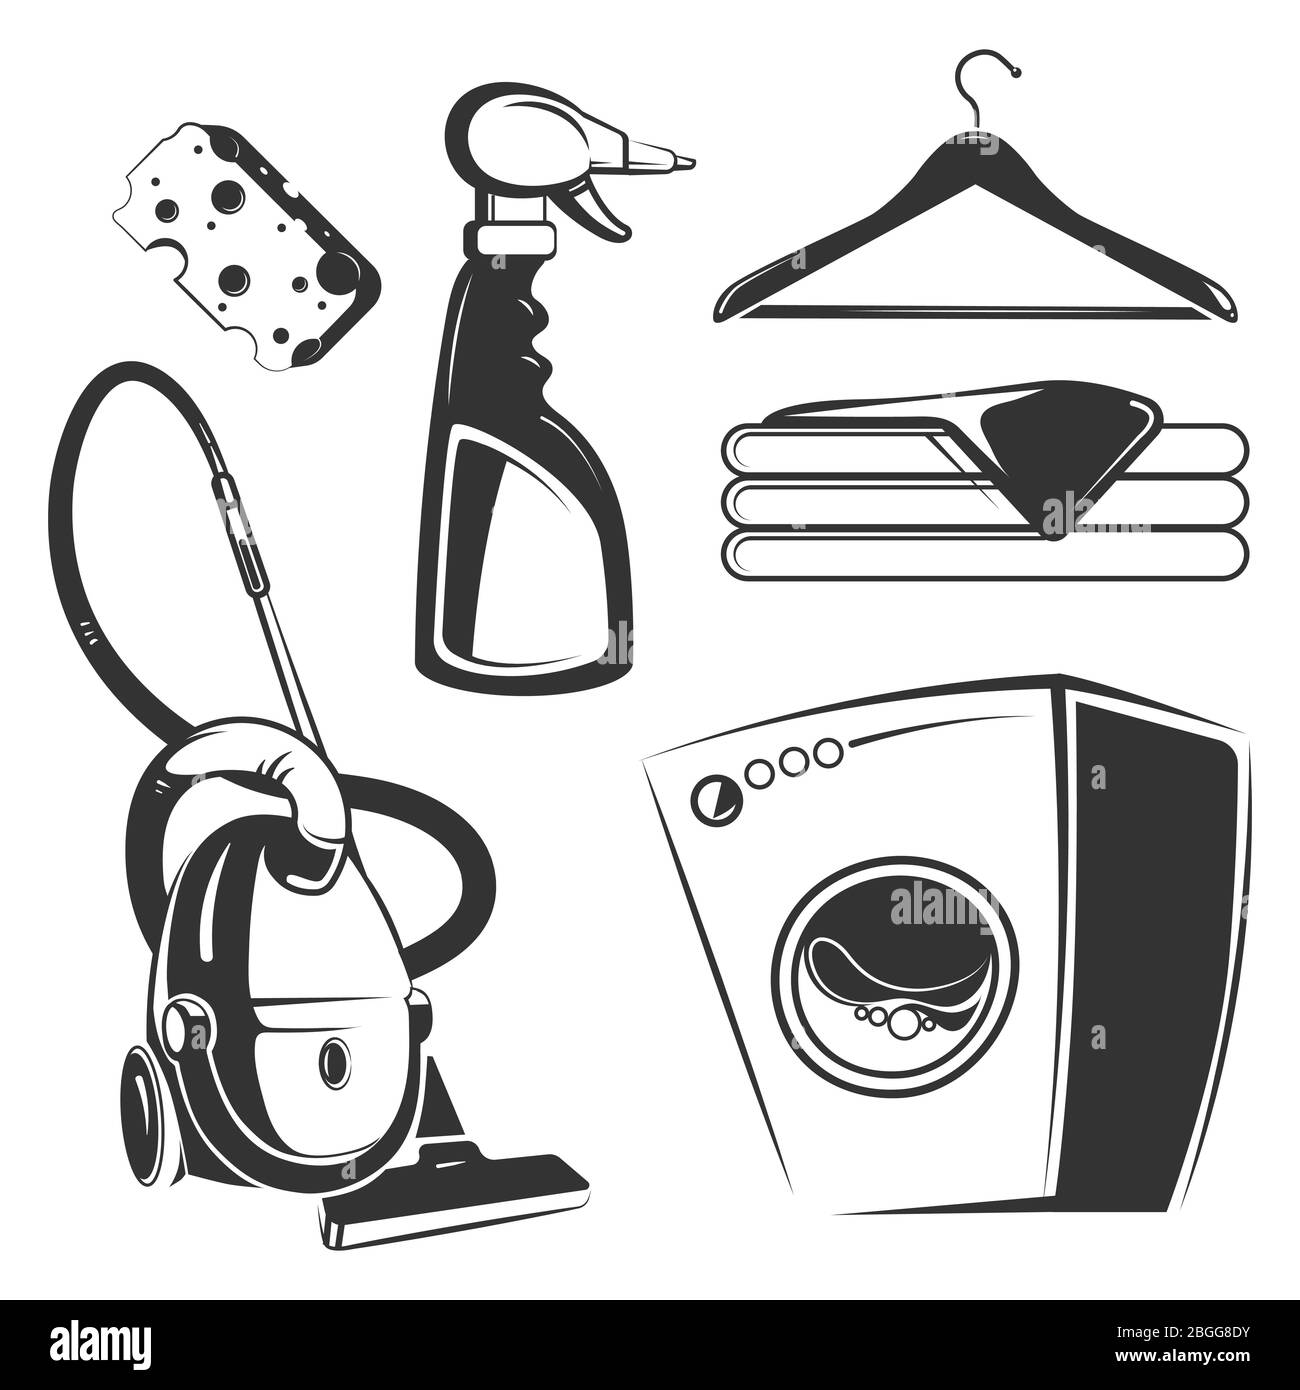 Reinigung, Waschen, Hausarbeit Objekte isoliert auf weißem Hintergrund. Vektorgrafik Stock Vektor